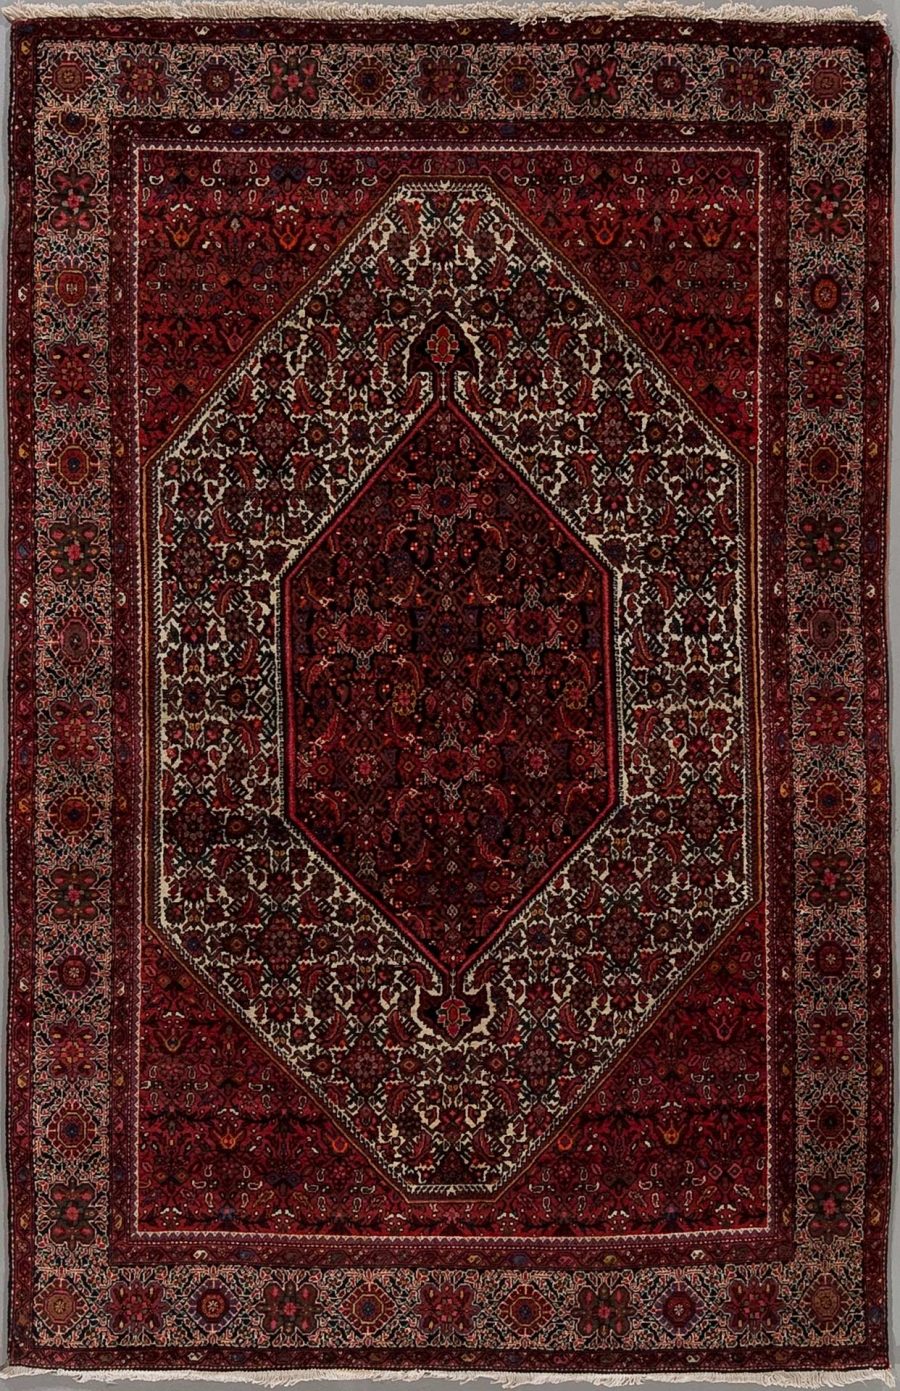 Alt-Text: Traditioneller orientalischer Teppich mit komplexem Muster in Rot-, Weiß- und Blautönen, zentrales Diamantdesign umgeben von mehreren dekorativen Rahmen.